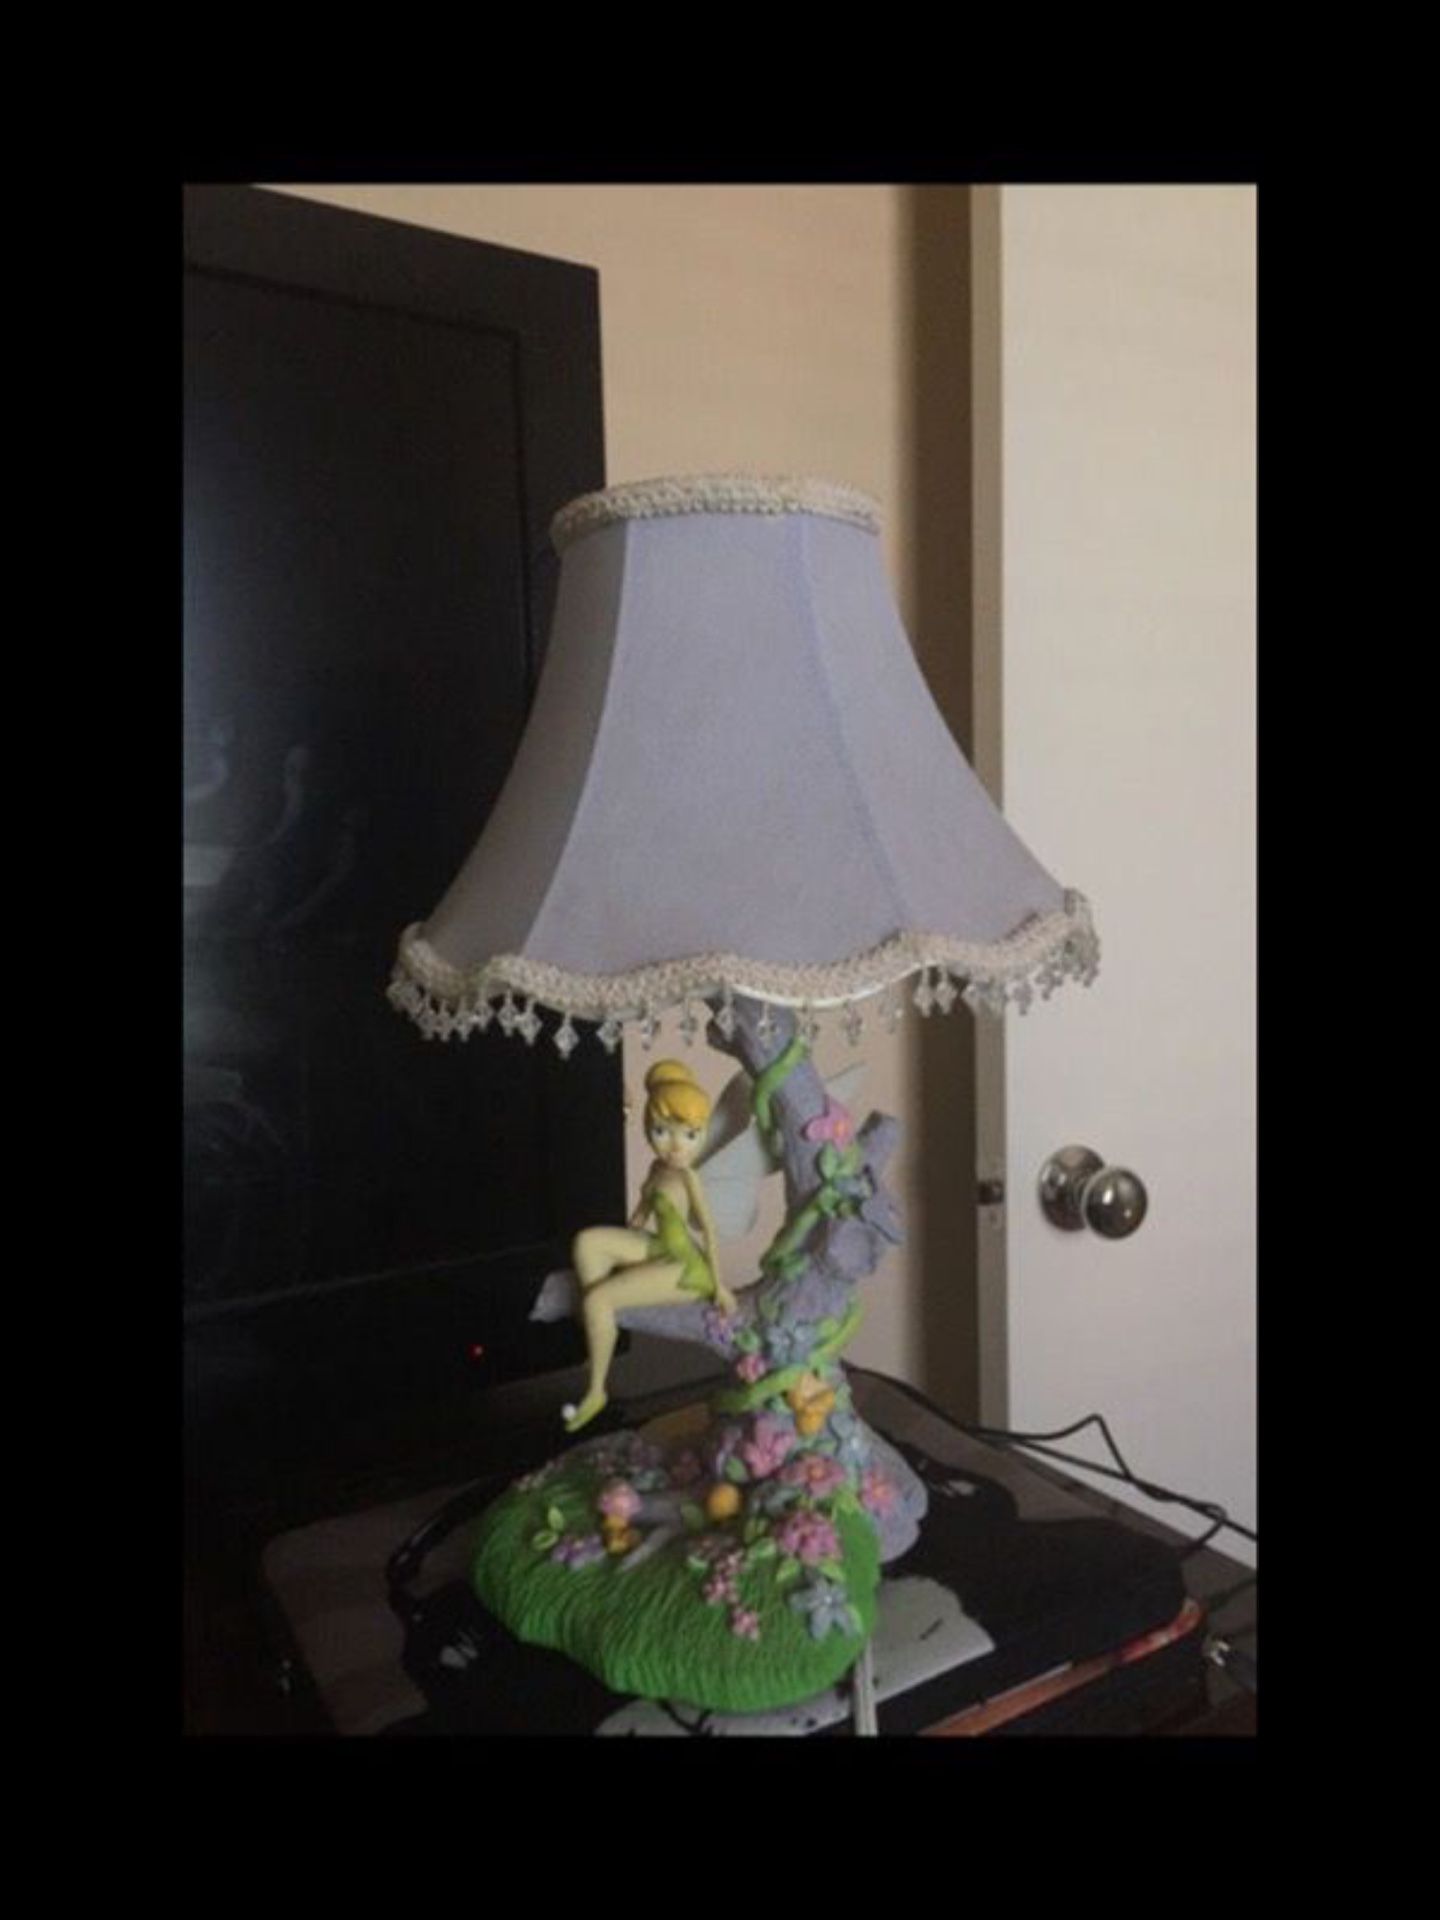 Disney brand tinker bell lamp